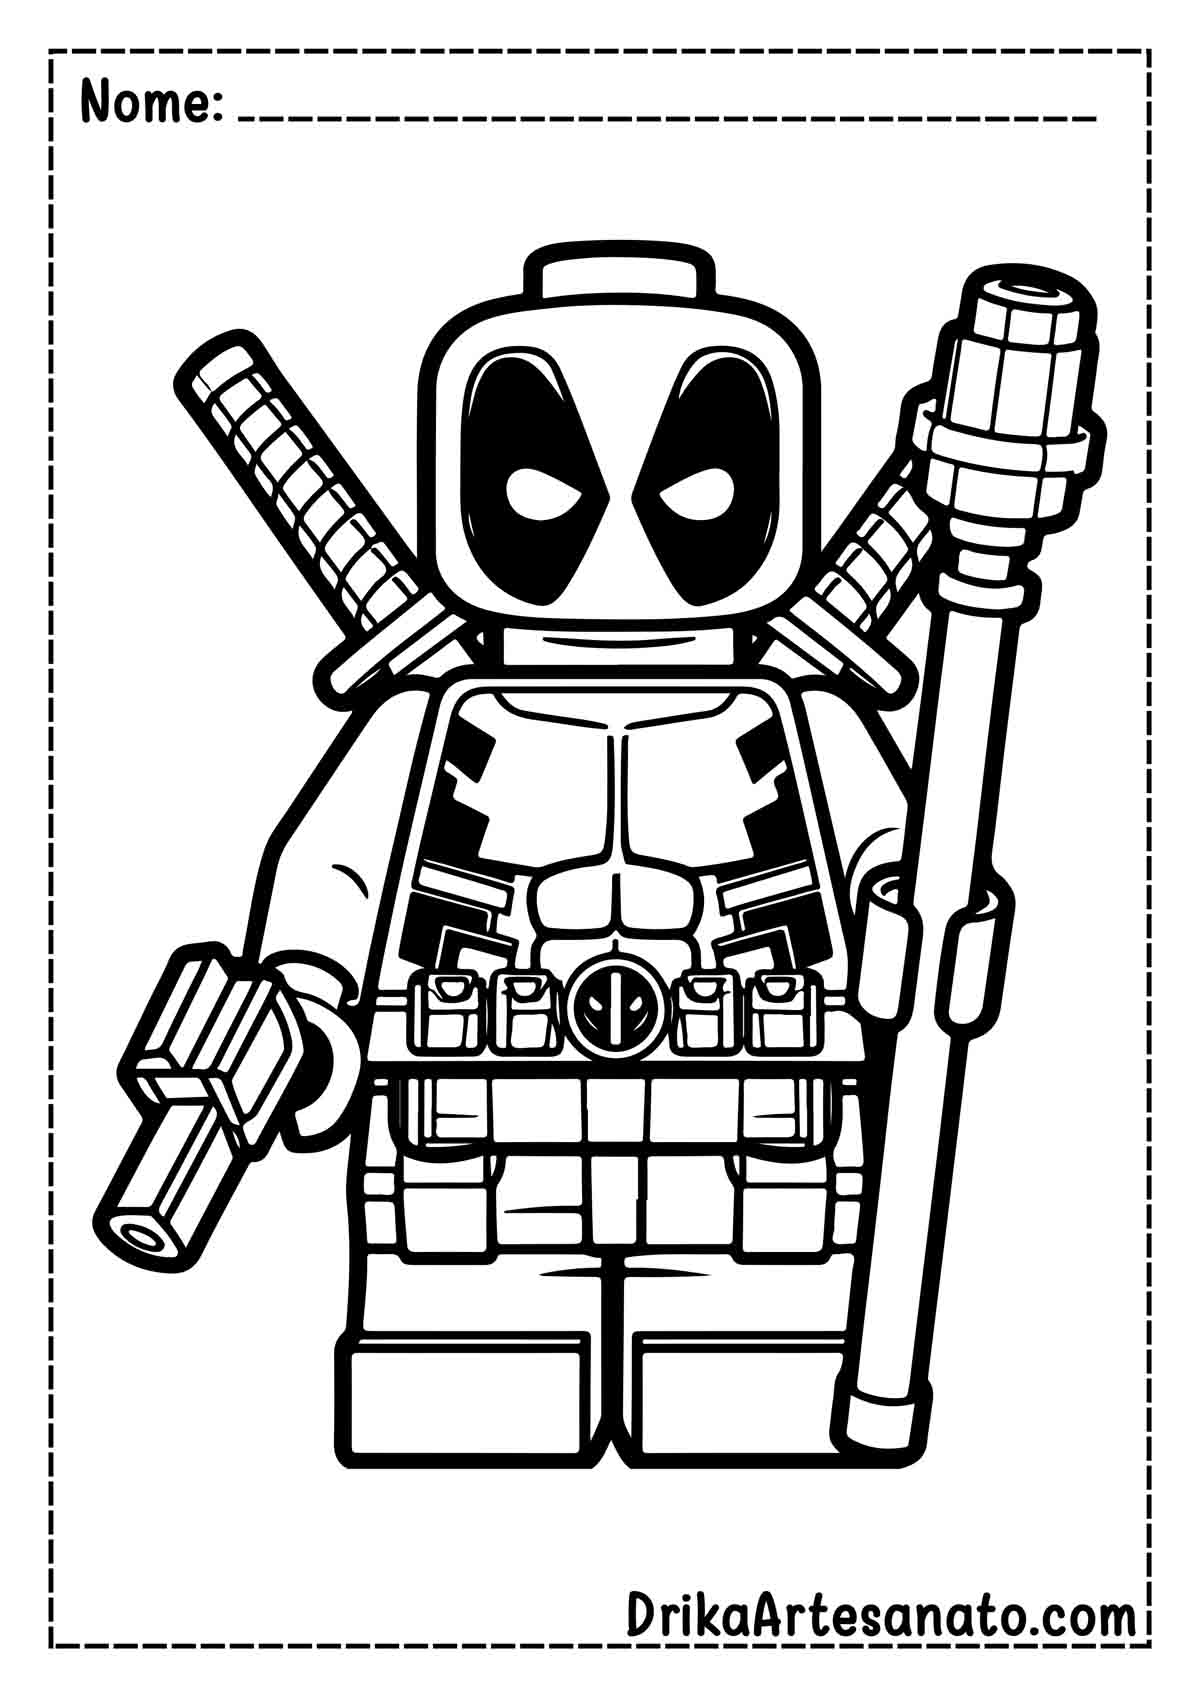 Desenho do Deadpool de Lego para Imprimir e Colorir